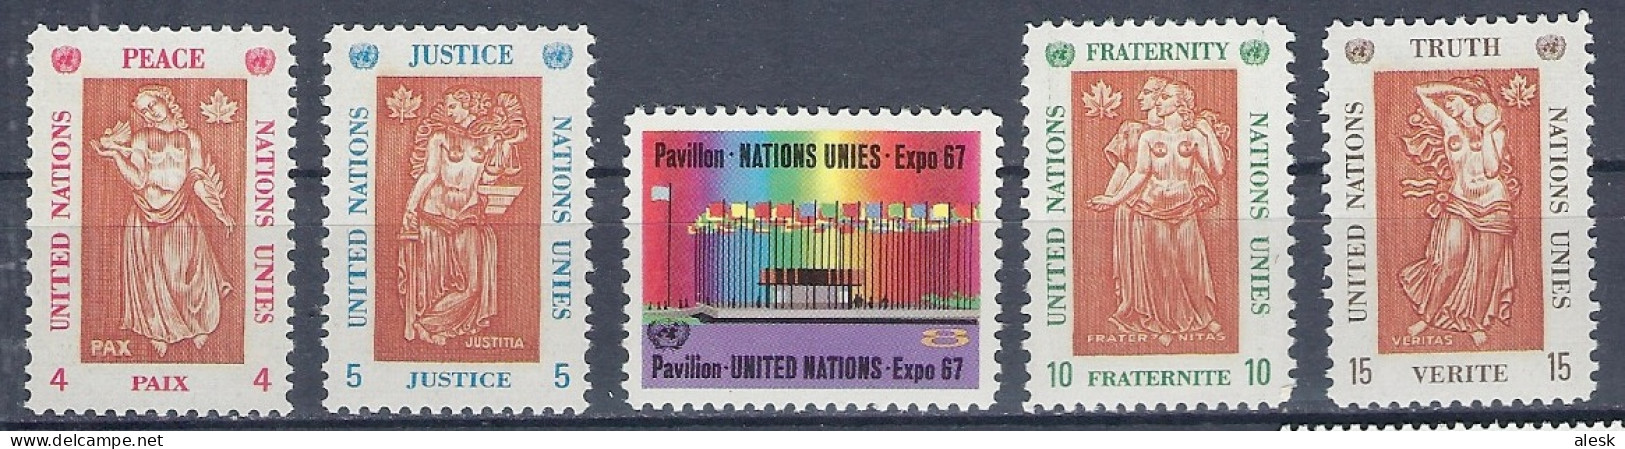 NATIONS-UNIES New-York 1967 - Série N°165 à 169 (y&t) - Exposition Montréal - Paix - Justice - Fraternité - Vérité - Ungebraucht